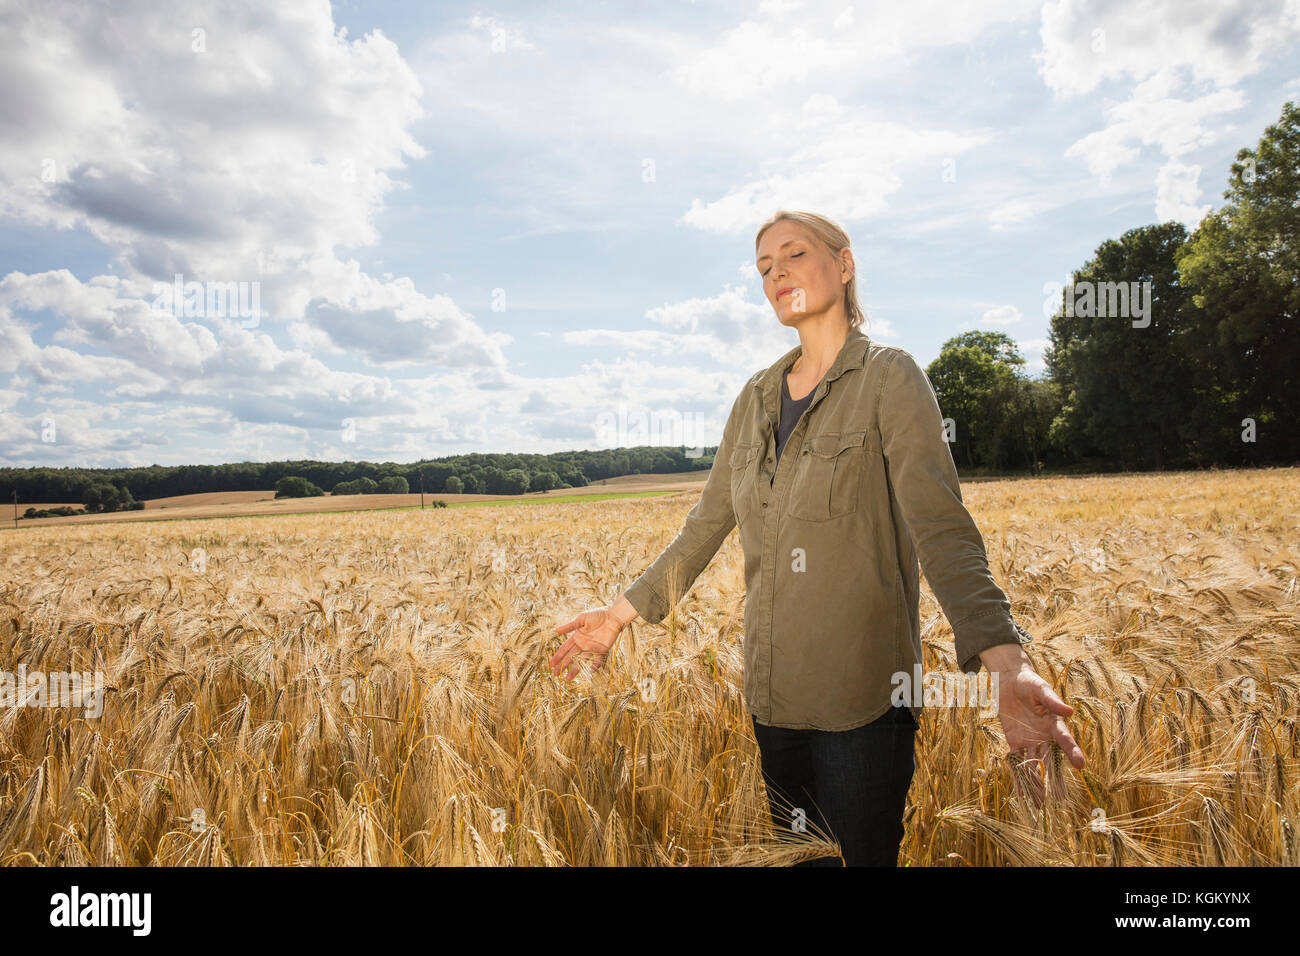 Pensativo Mujer de pie en medio de los cultivos de trigo en la granja contra el cielo en día soleado Foto de stock